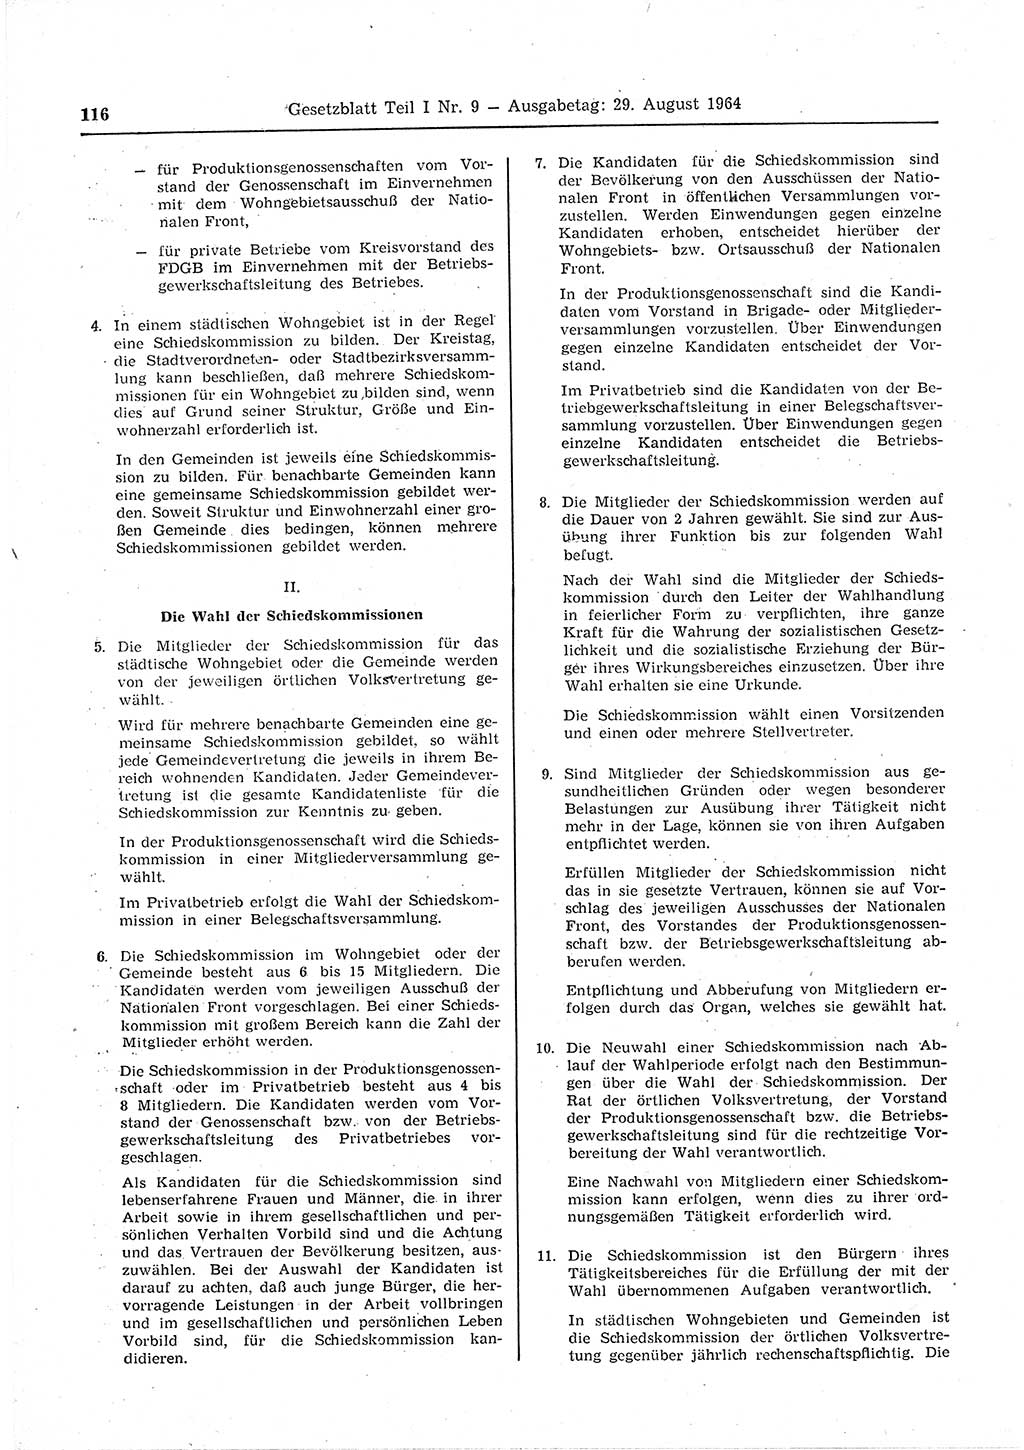 Gesetzblatt (GBl.) der Deutschen Demokratischen Republik (DDR) Teil Ⅰ 1964, Seite 116 (GBl. DDR Ⅰ 1964, S. 116)